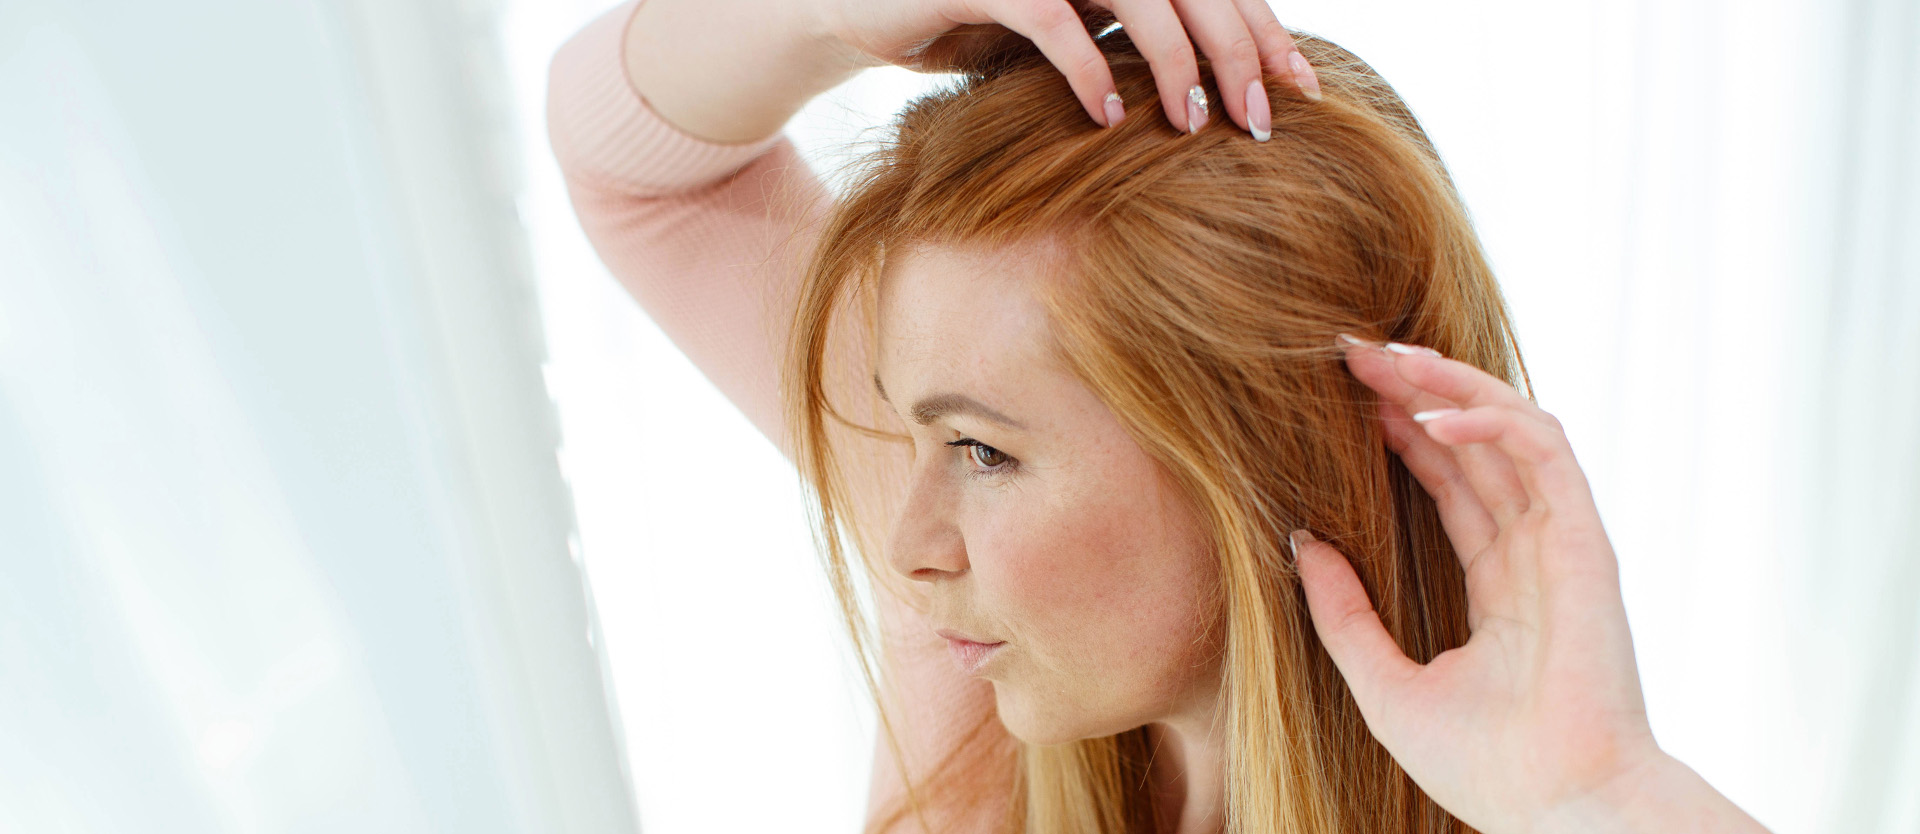 Understanding Telogen Effluvium Related Hair Loss